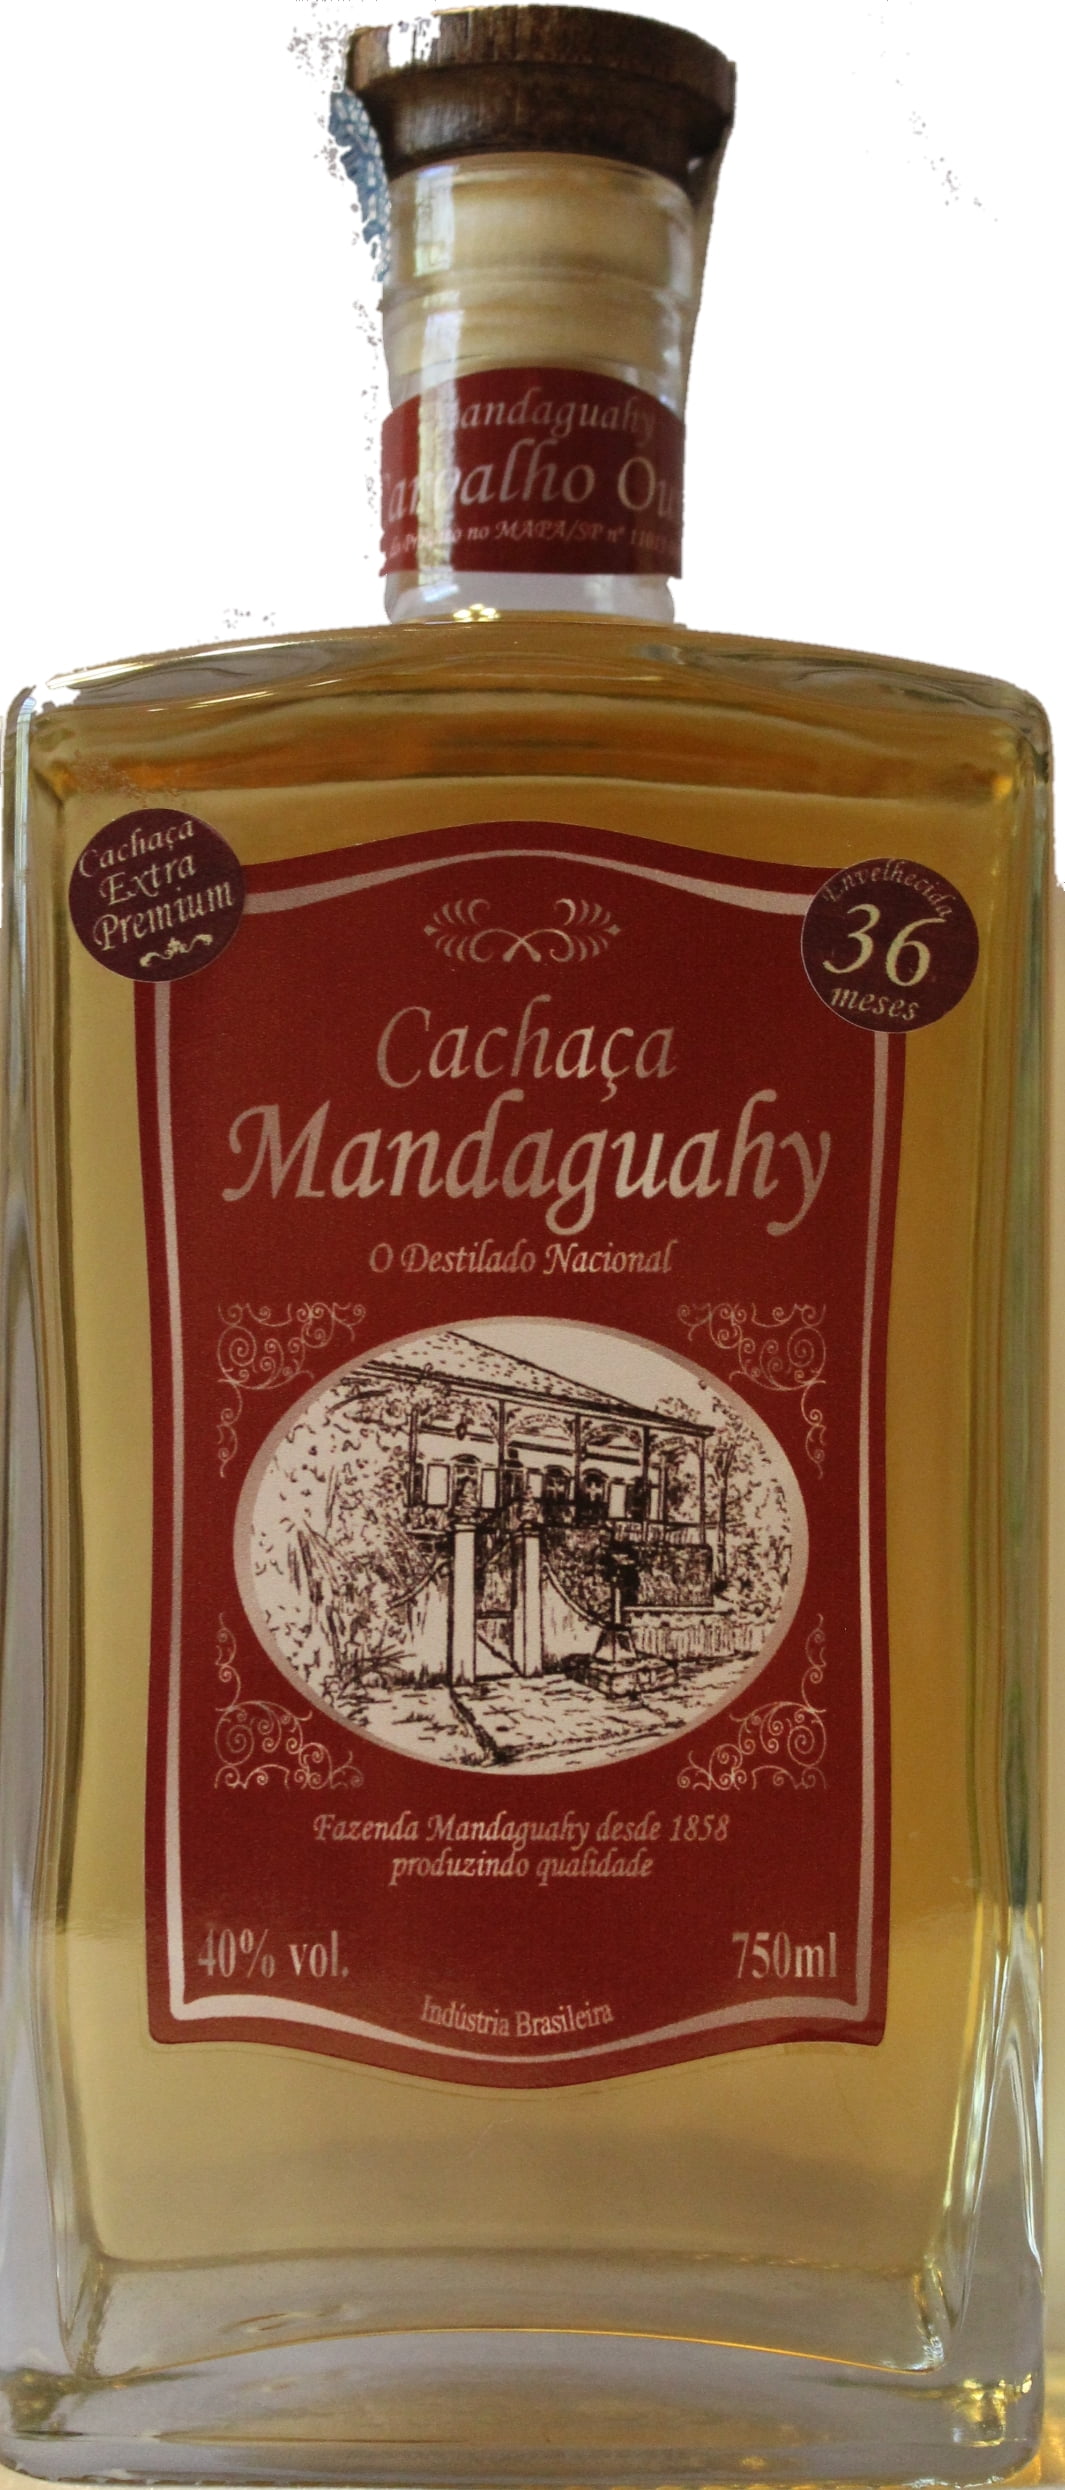 Cachaça Mandaguahy extra Premium 750 ml